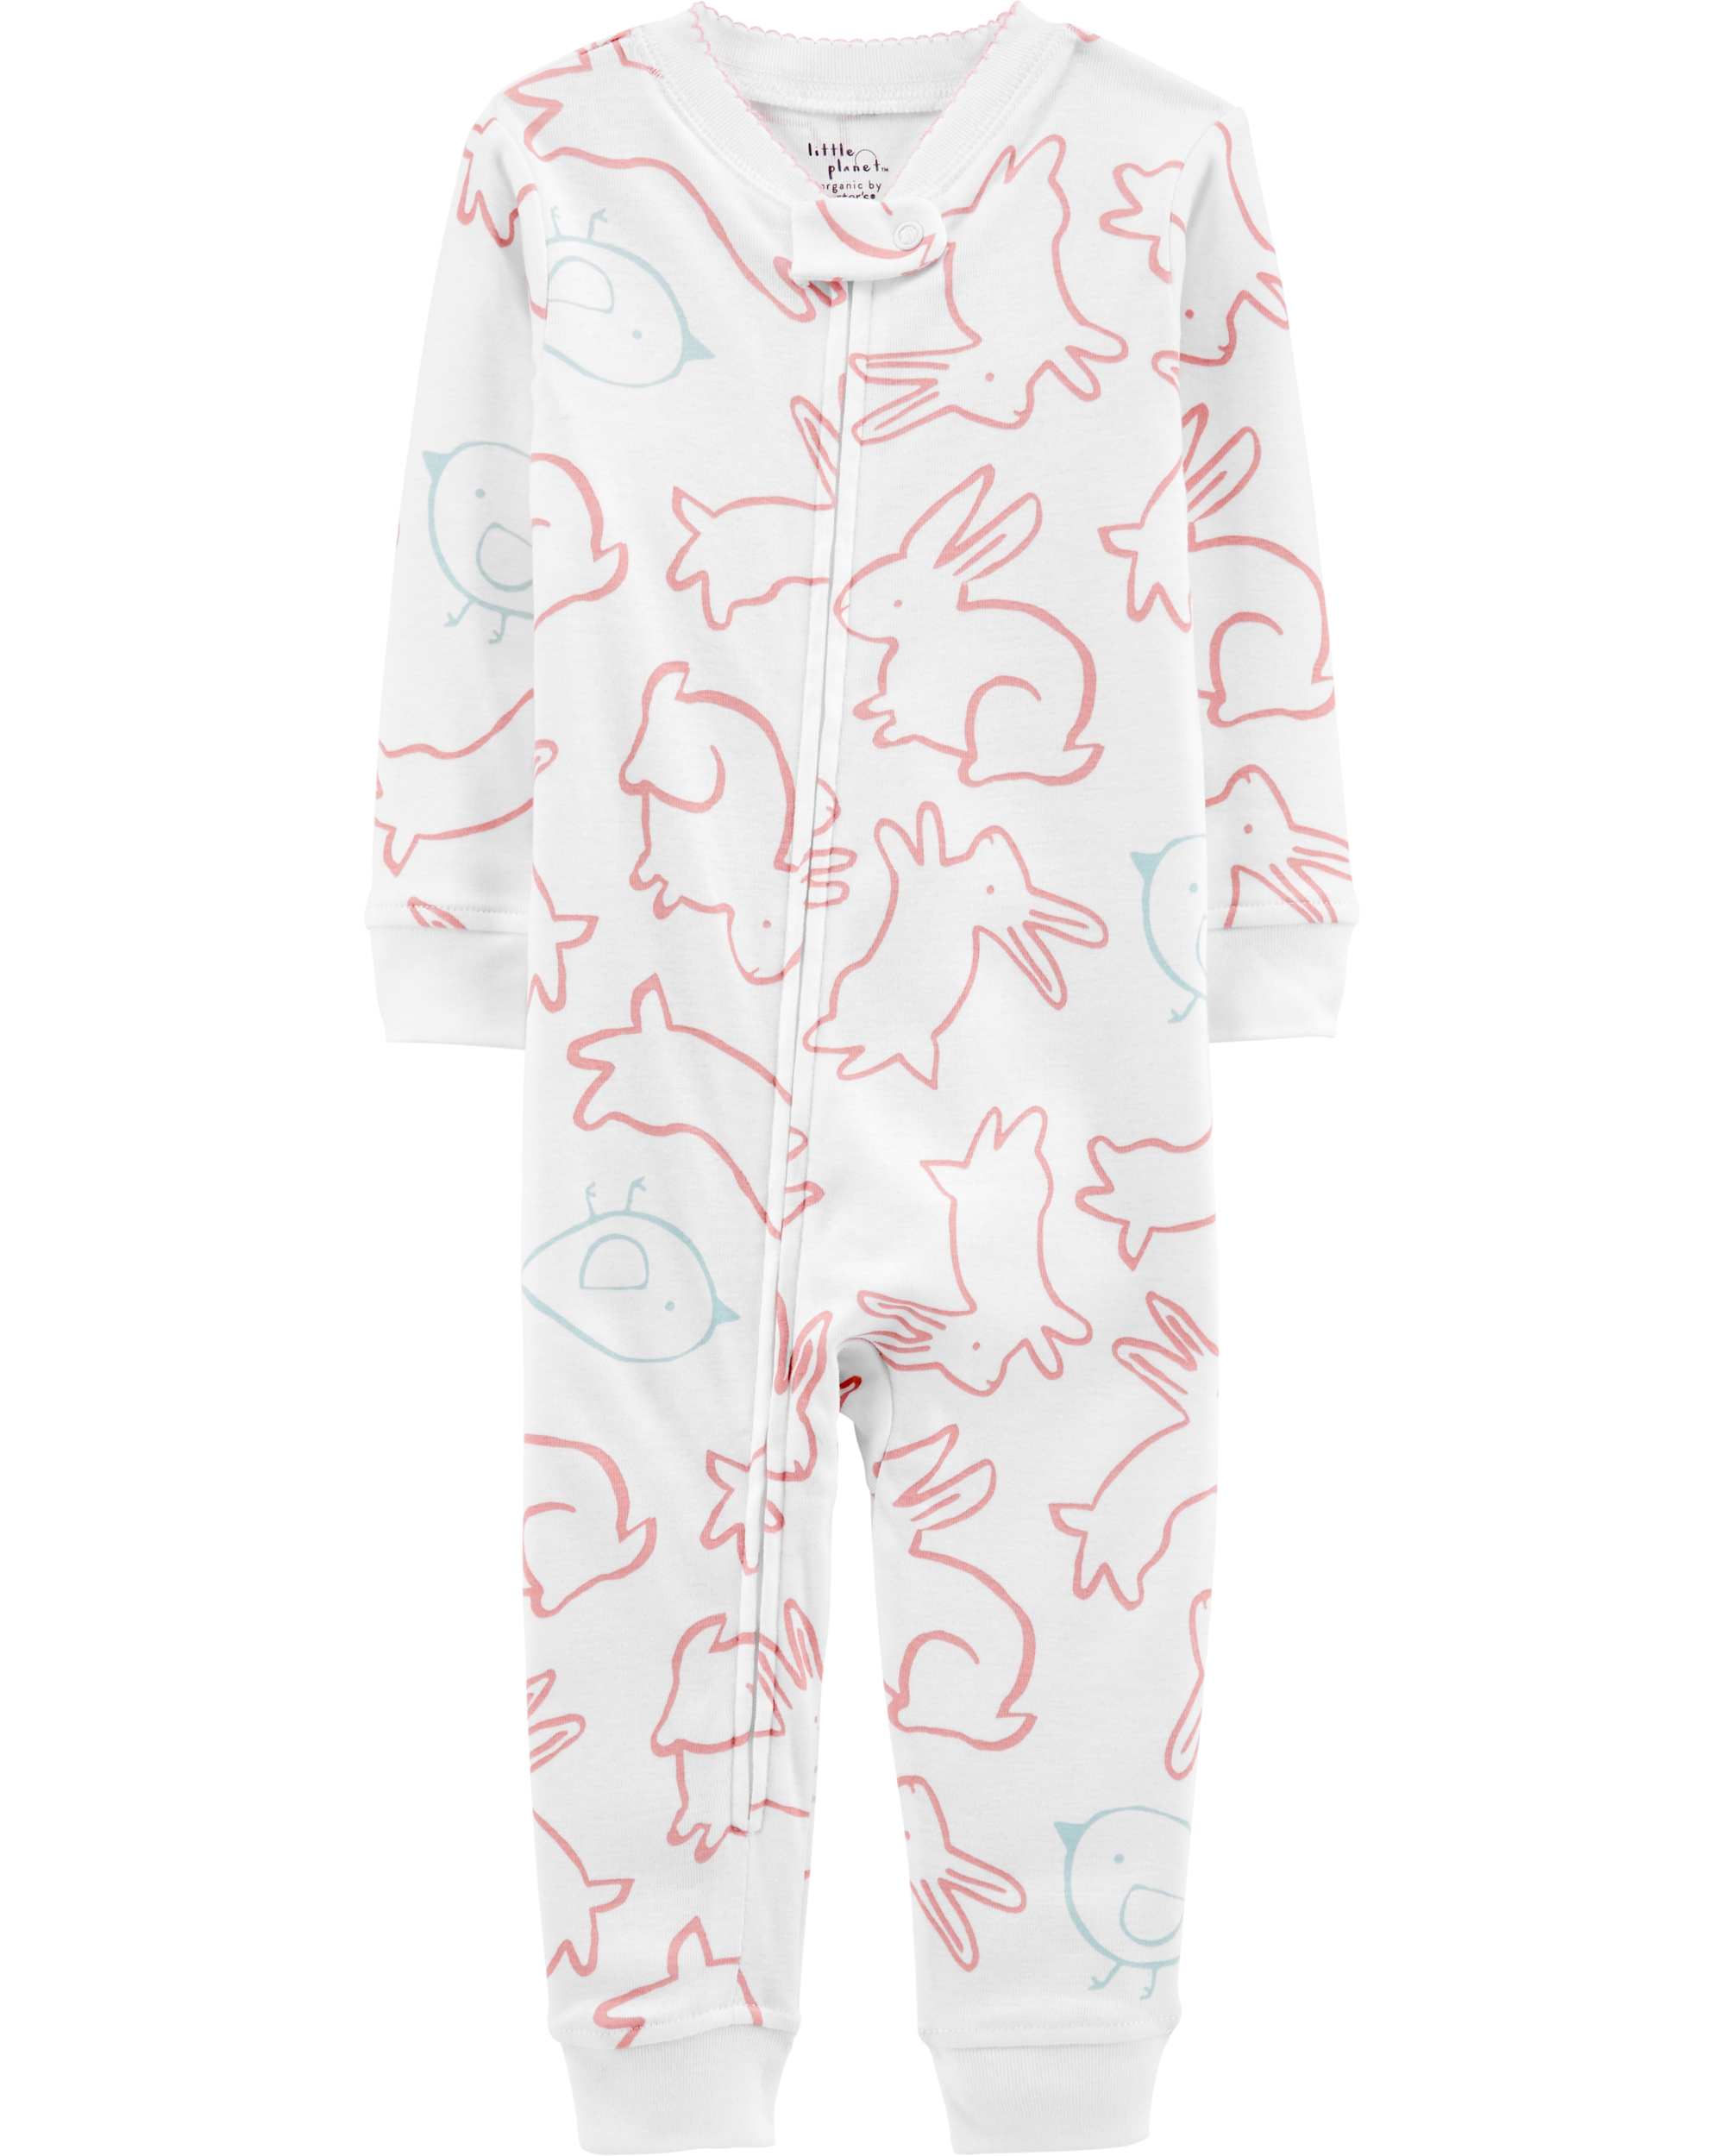 Carter’s Pijama Iepurasi 100% Bumbac Organic imagine